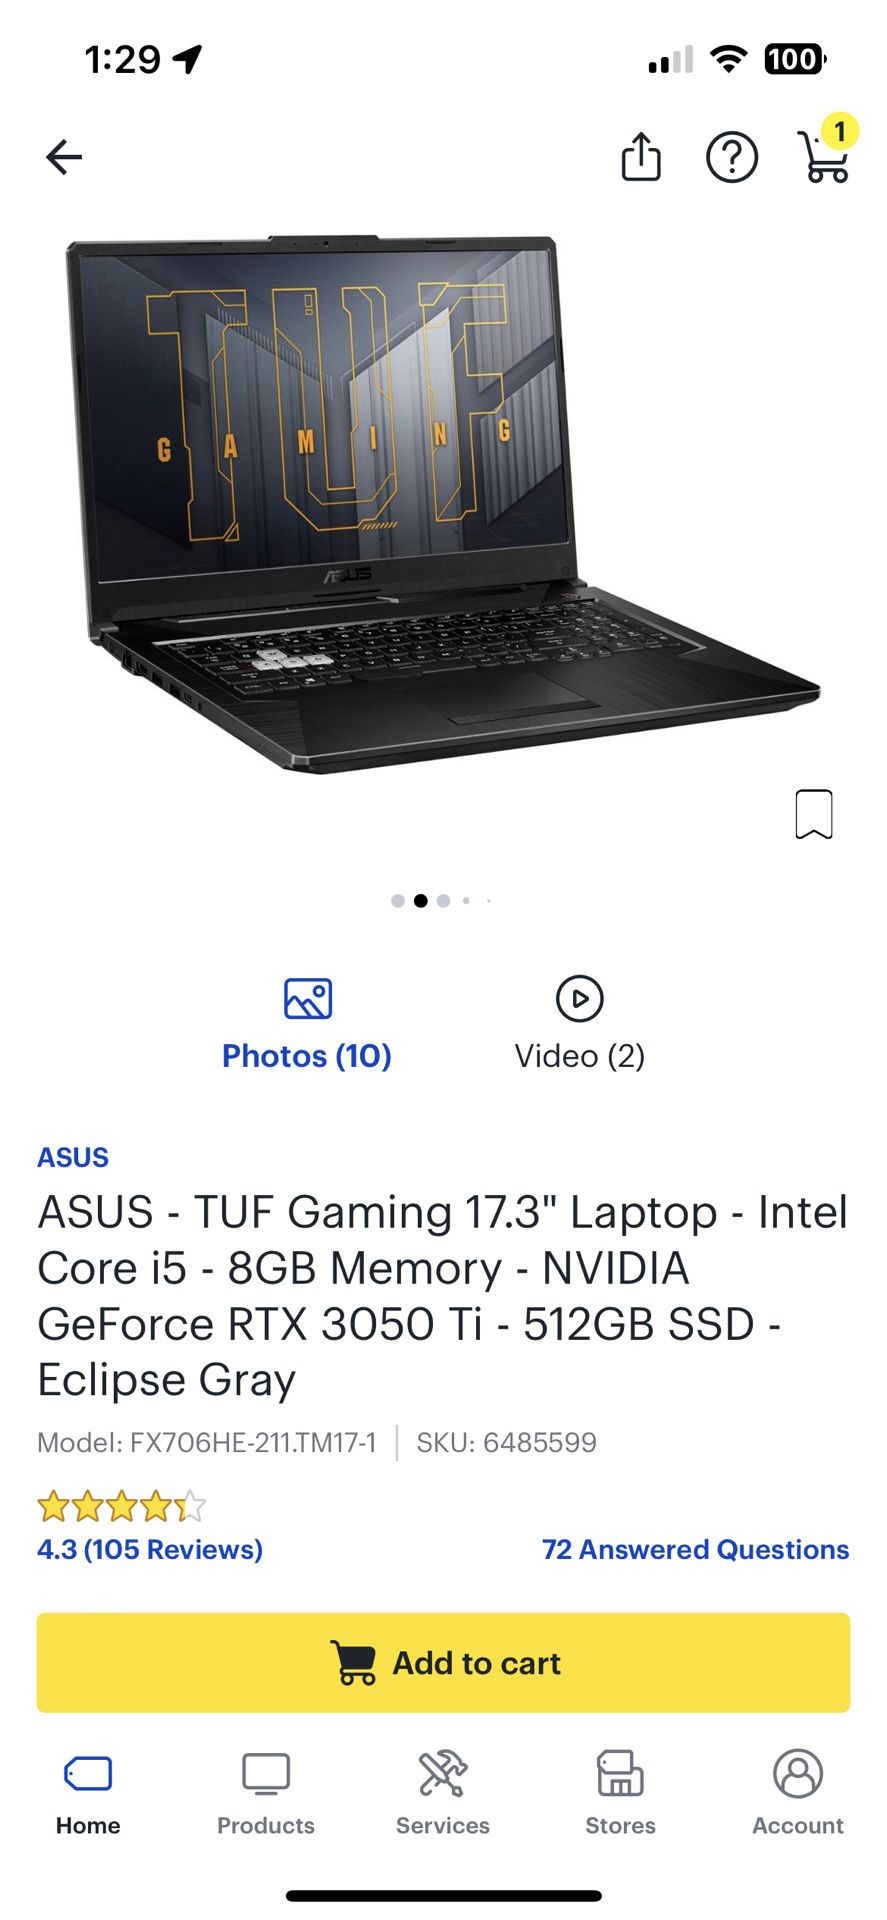 Asus TUF Gaming 17.3” Laptop